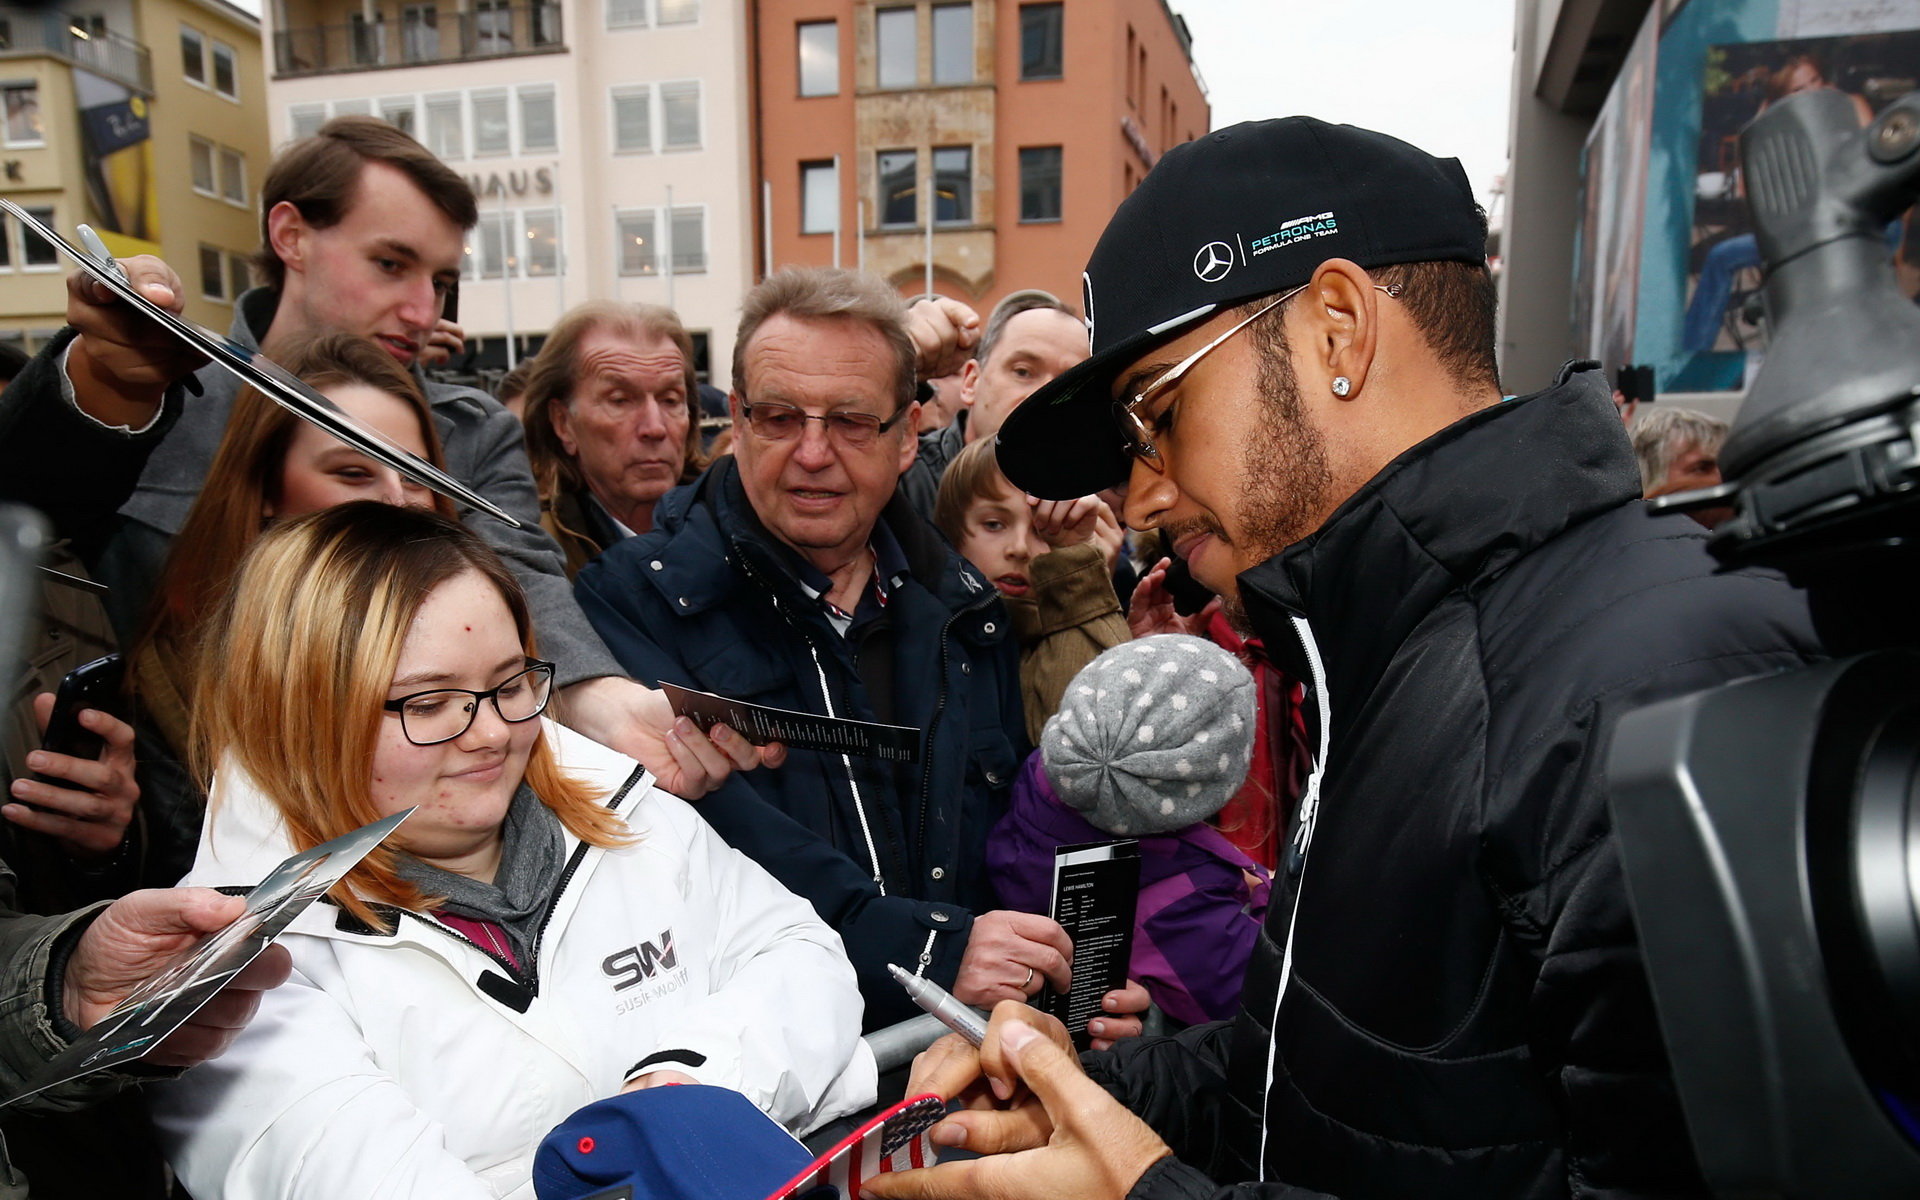 Lewis Hamilton je oblíbenou osobou, musí být loajální vůči sponzorům?